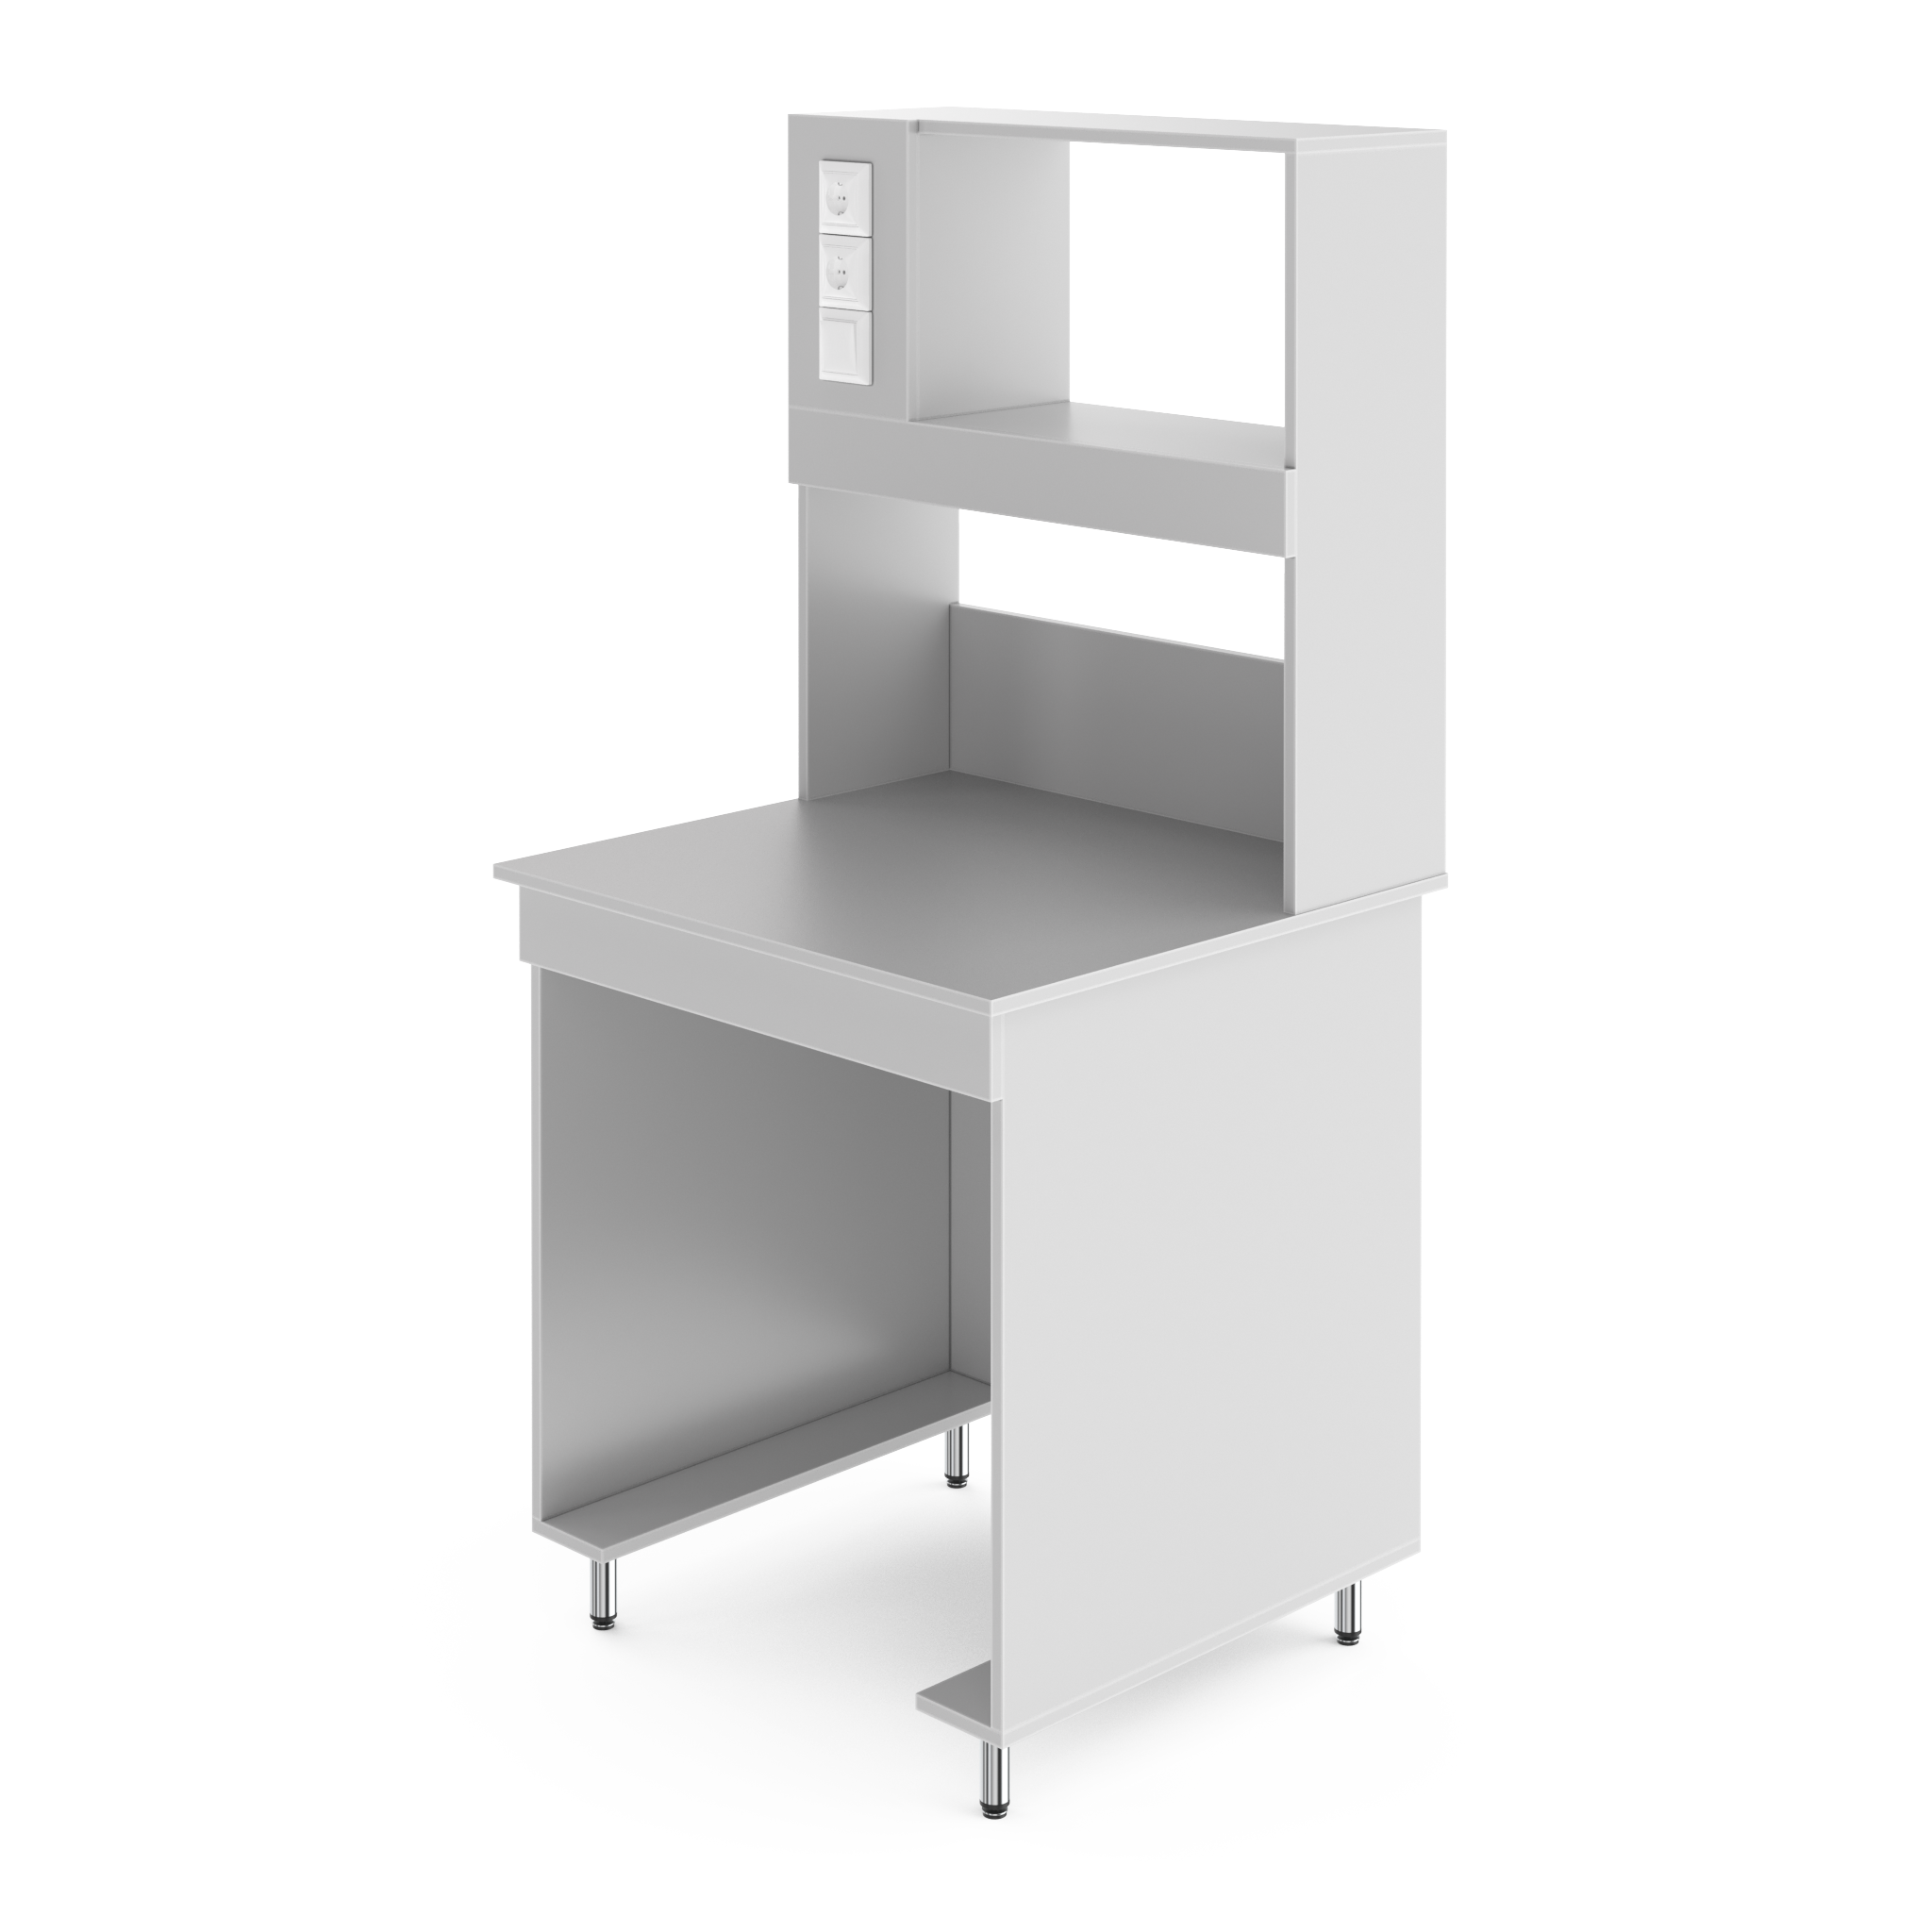 Физический пристенный лабораторный стол со столешницей из химически стойкого пластика НВ-800 ПСП